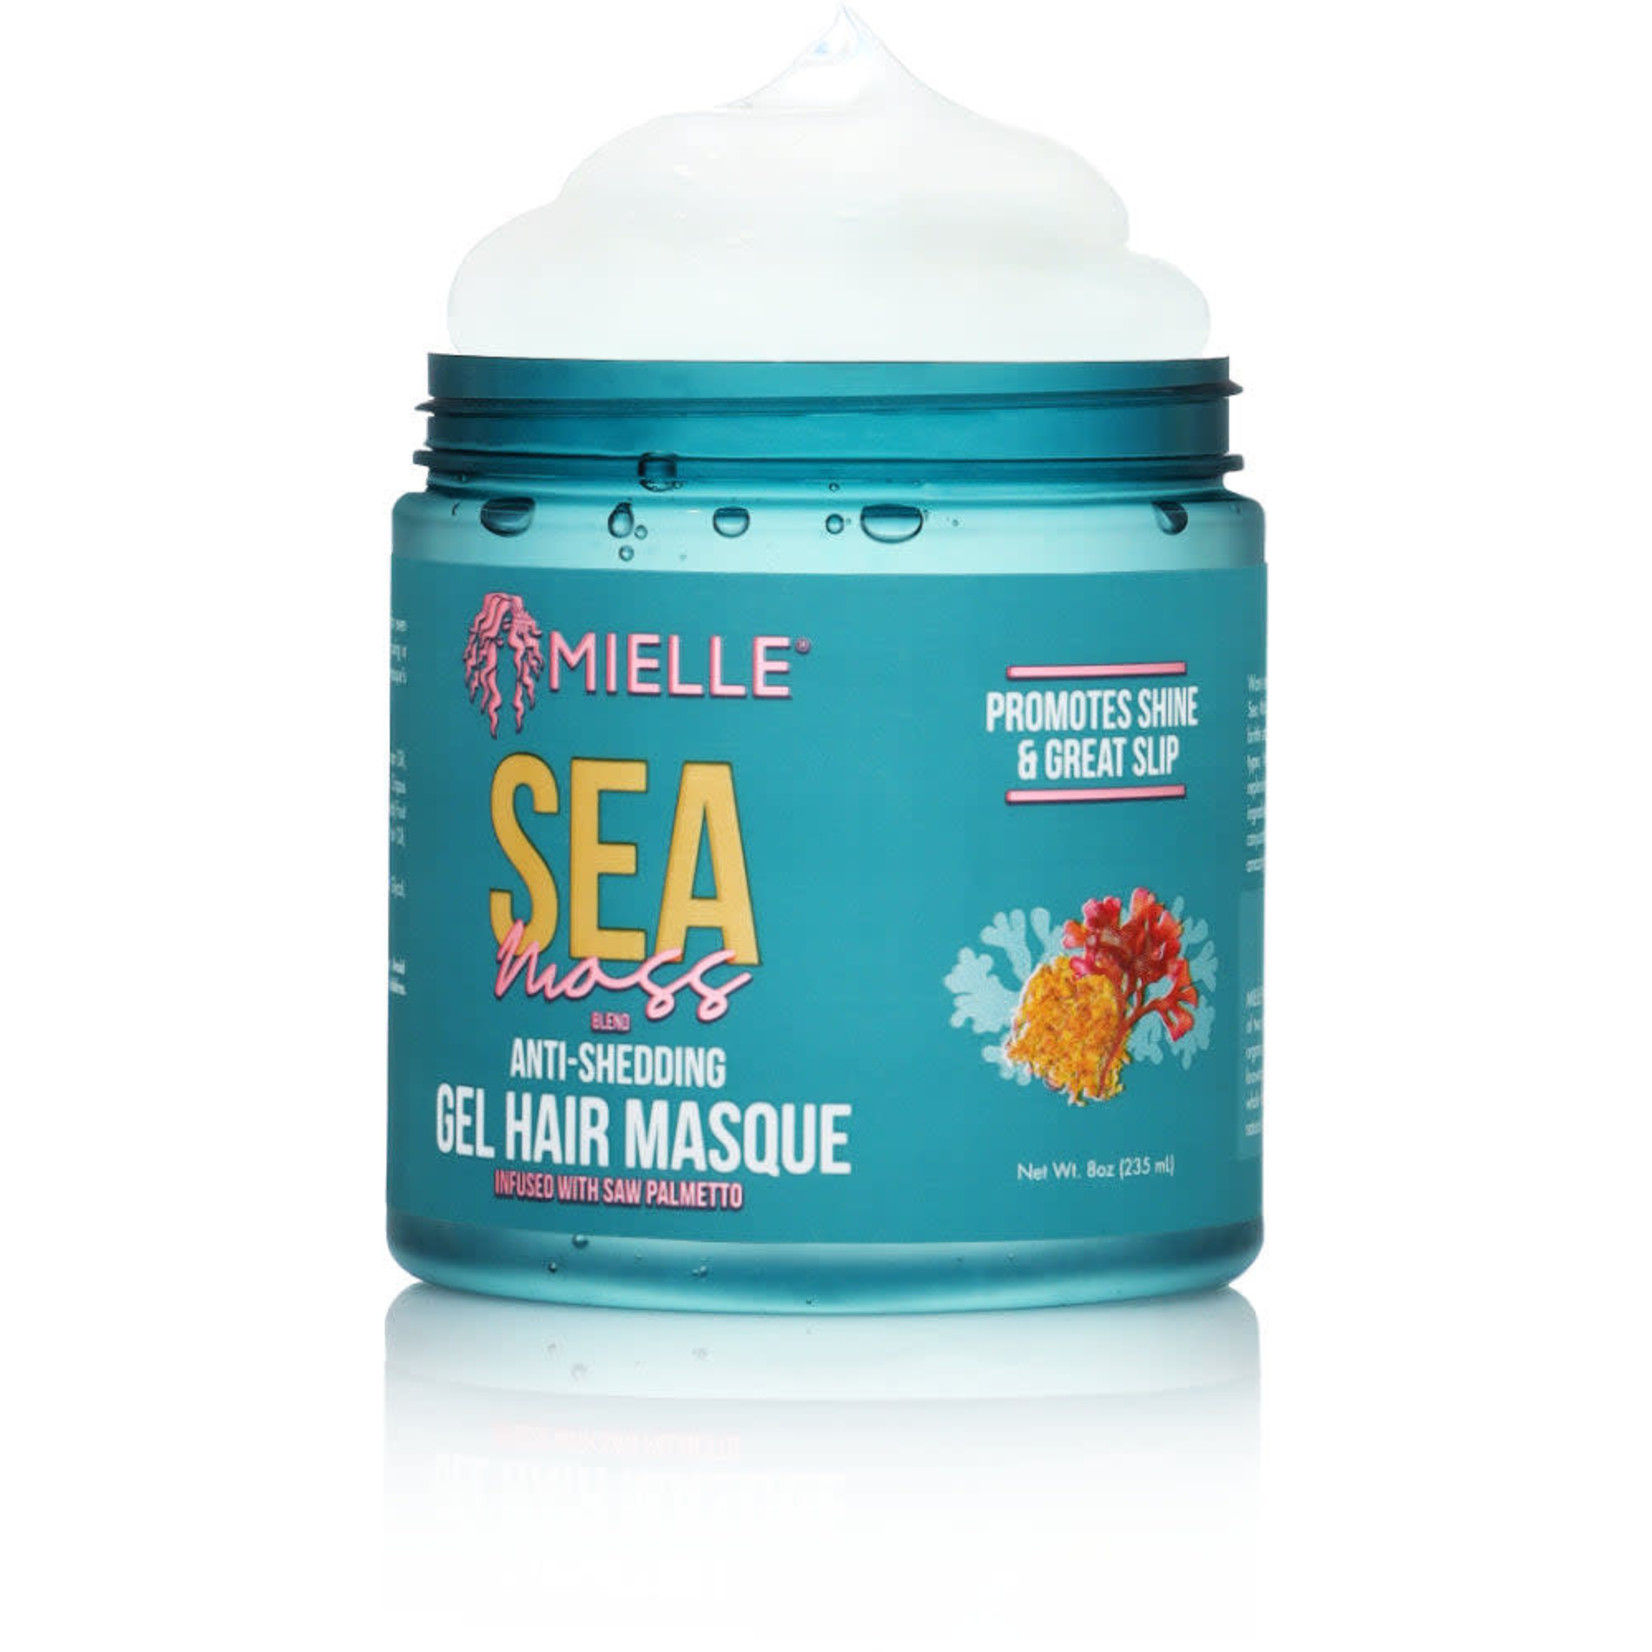 Mielle Organics Sea Moss Anti-Shedding Gel Hair Masque